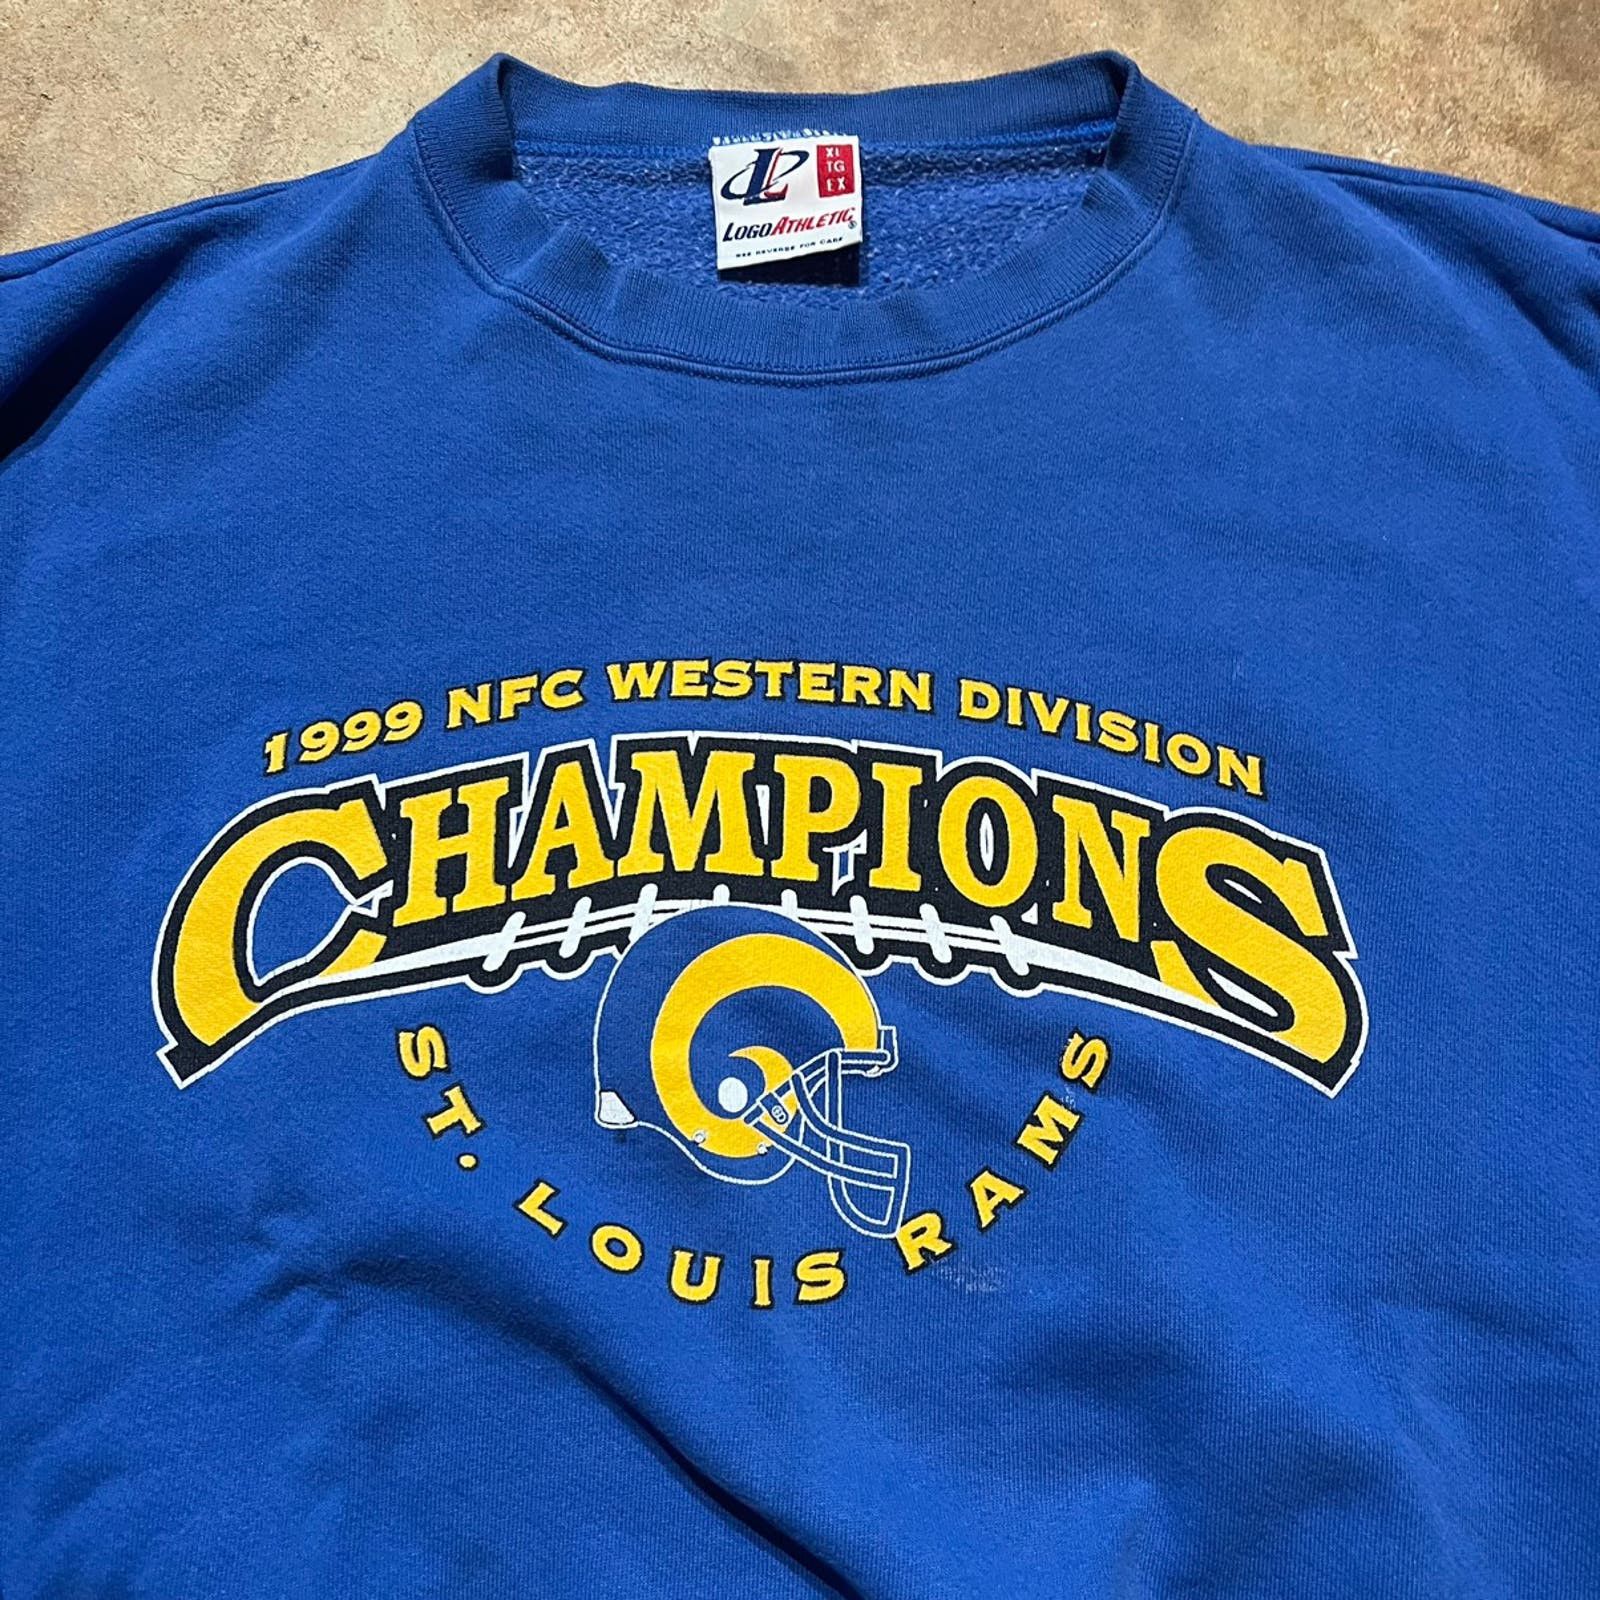 Vintage Vintage 1999 St Louis Rams NFL Champions Sweatshirt Size US XL / EU 56 / 4 - 2 Preview